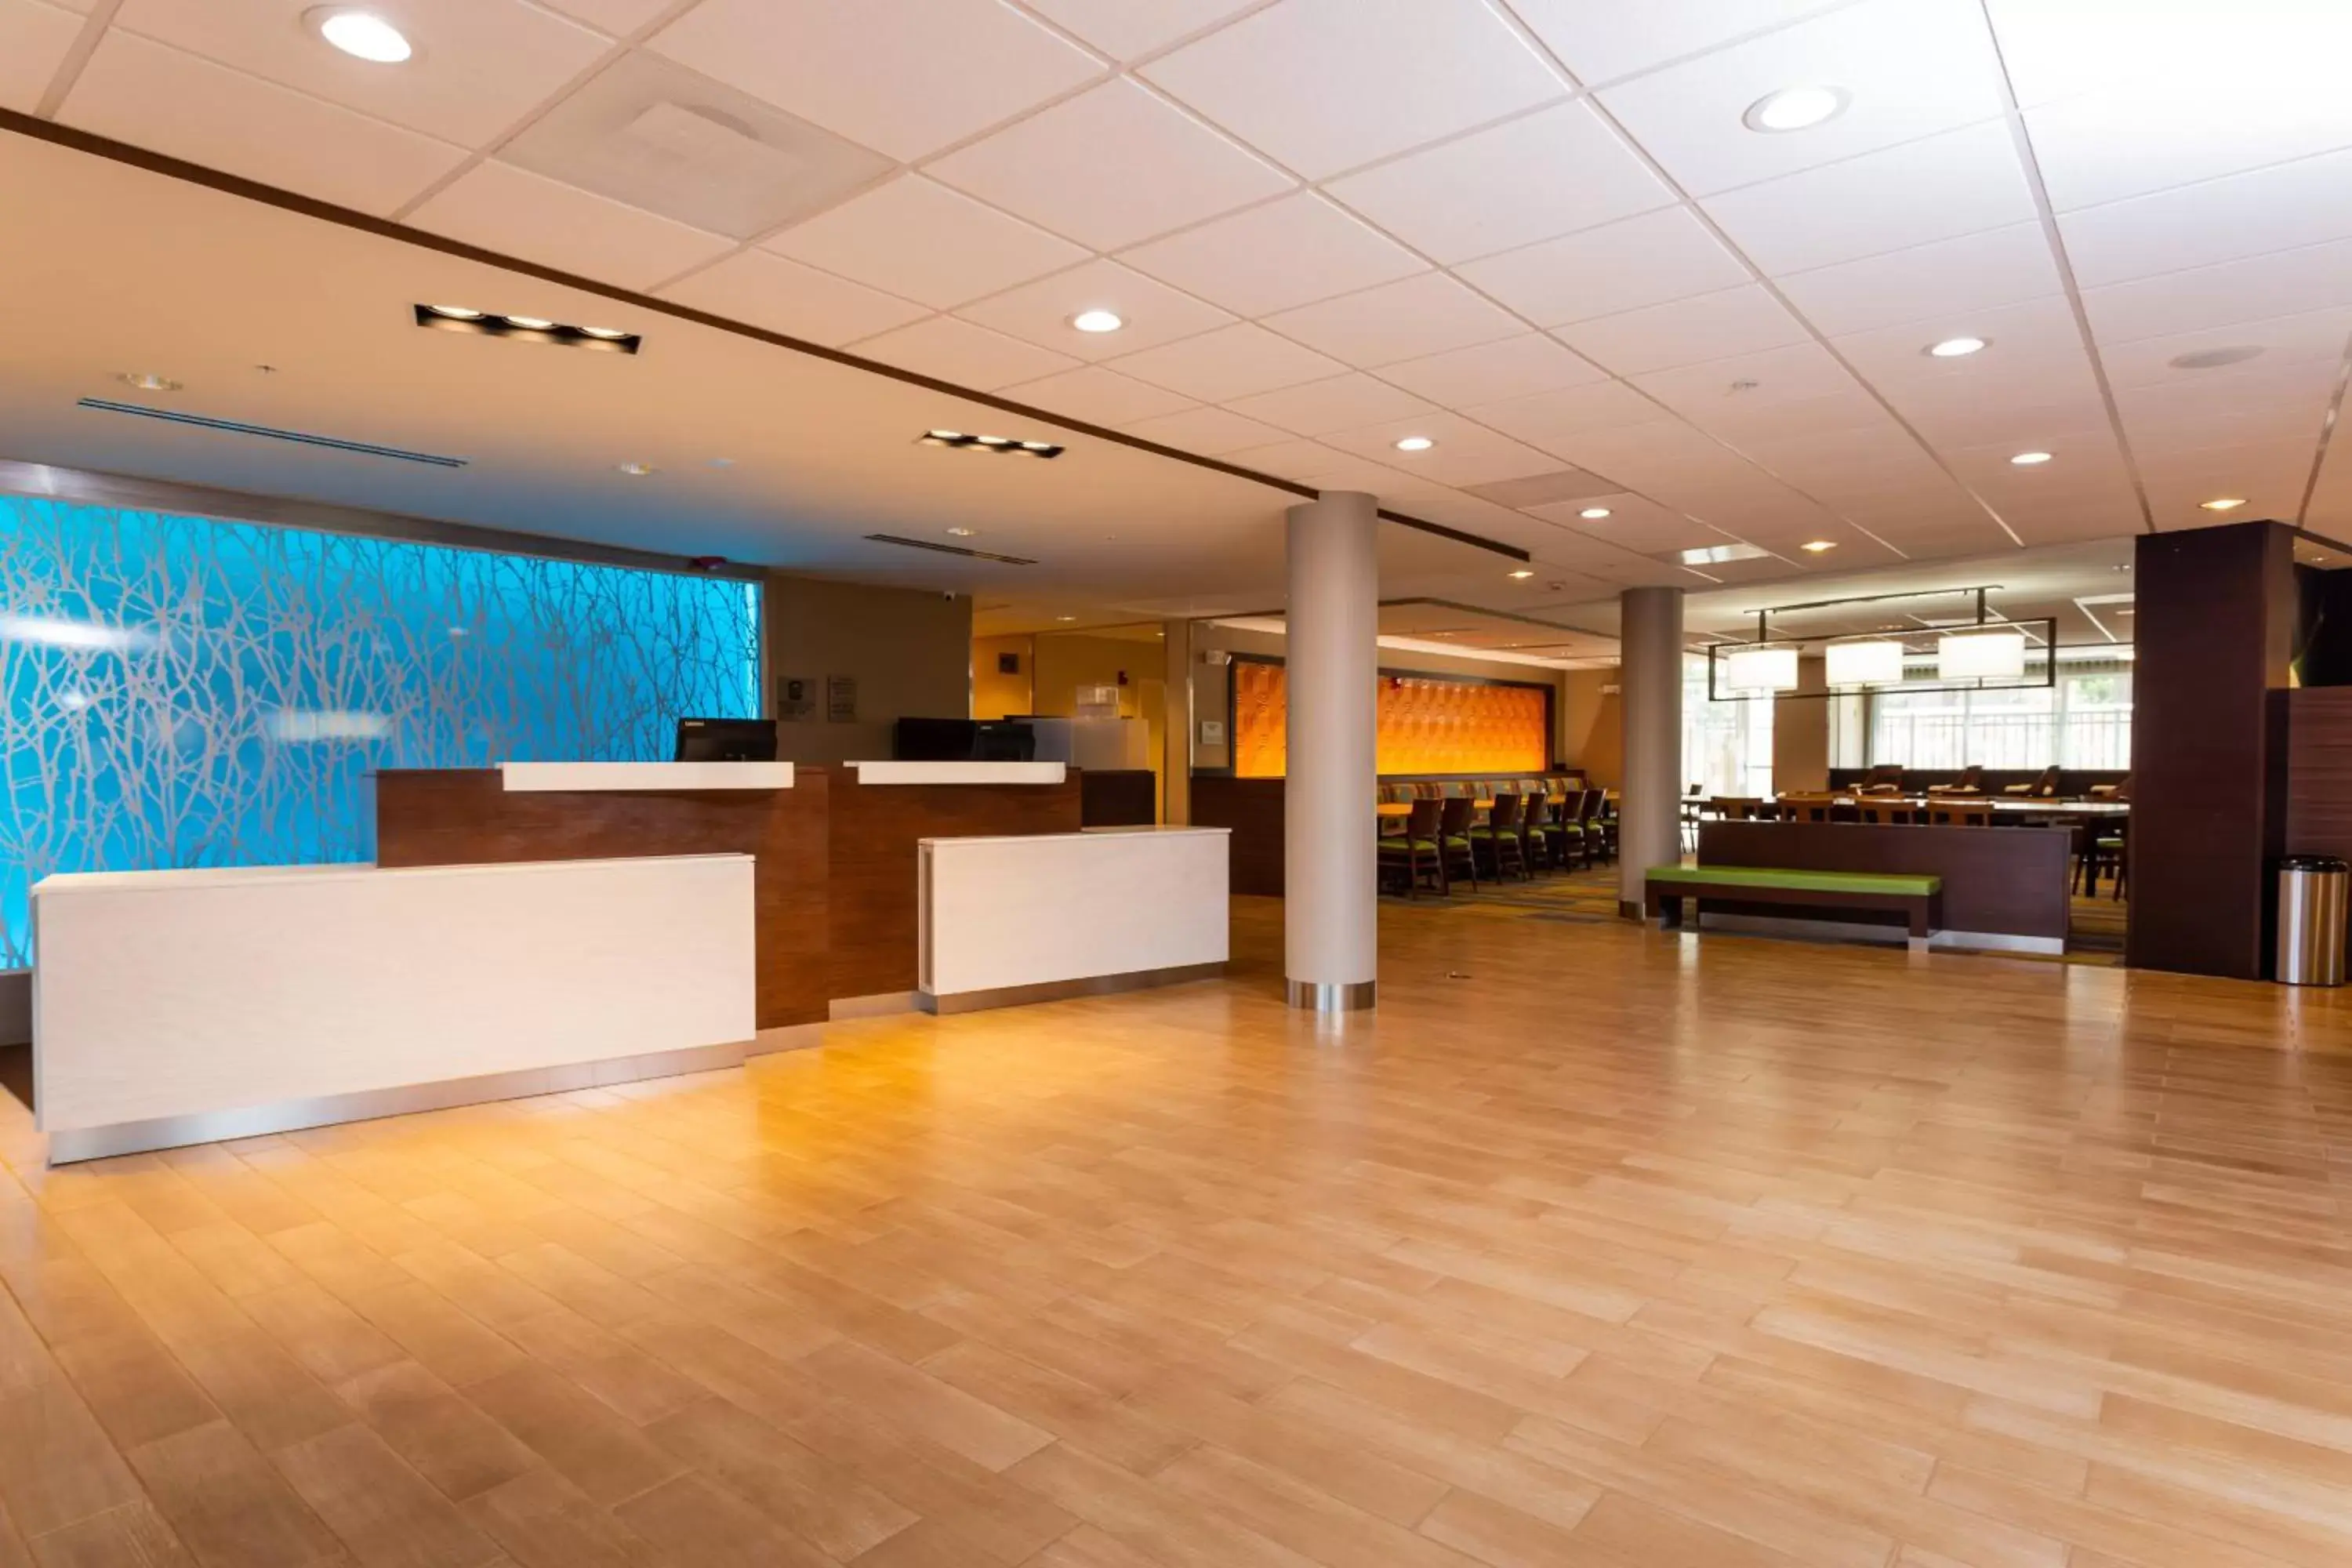 Lobby or reception, Lobby/Reception in Fairfield Inn & Suites by Marriott Bay City, Texas